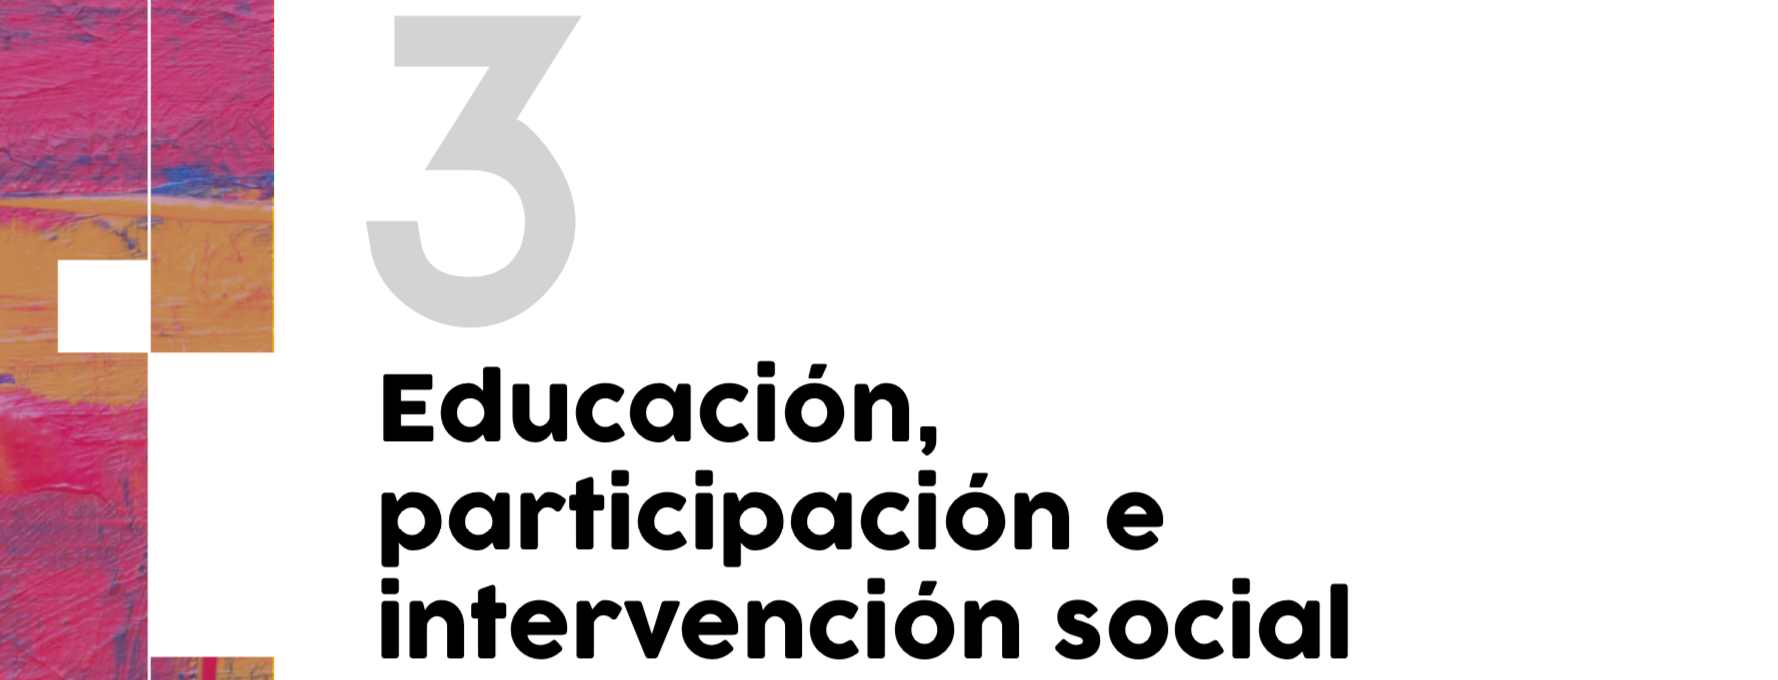 Educación, participacion e intervención social